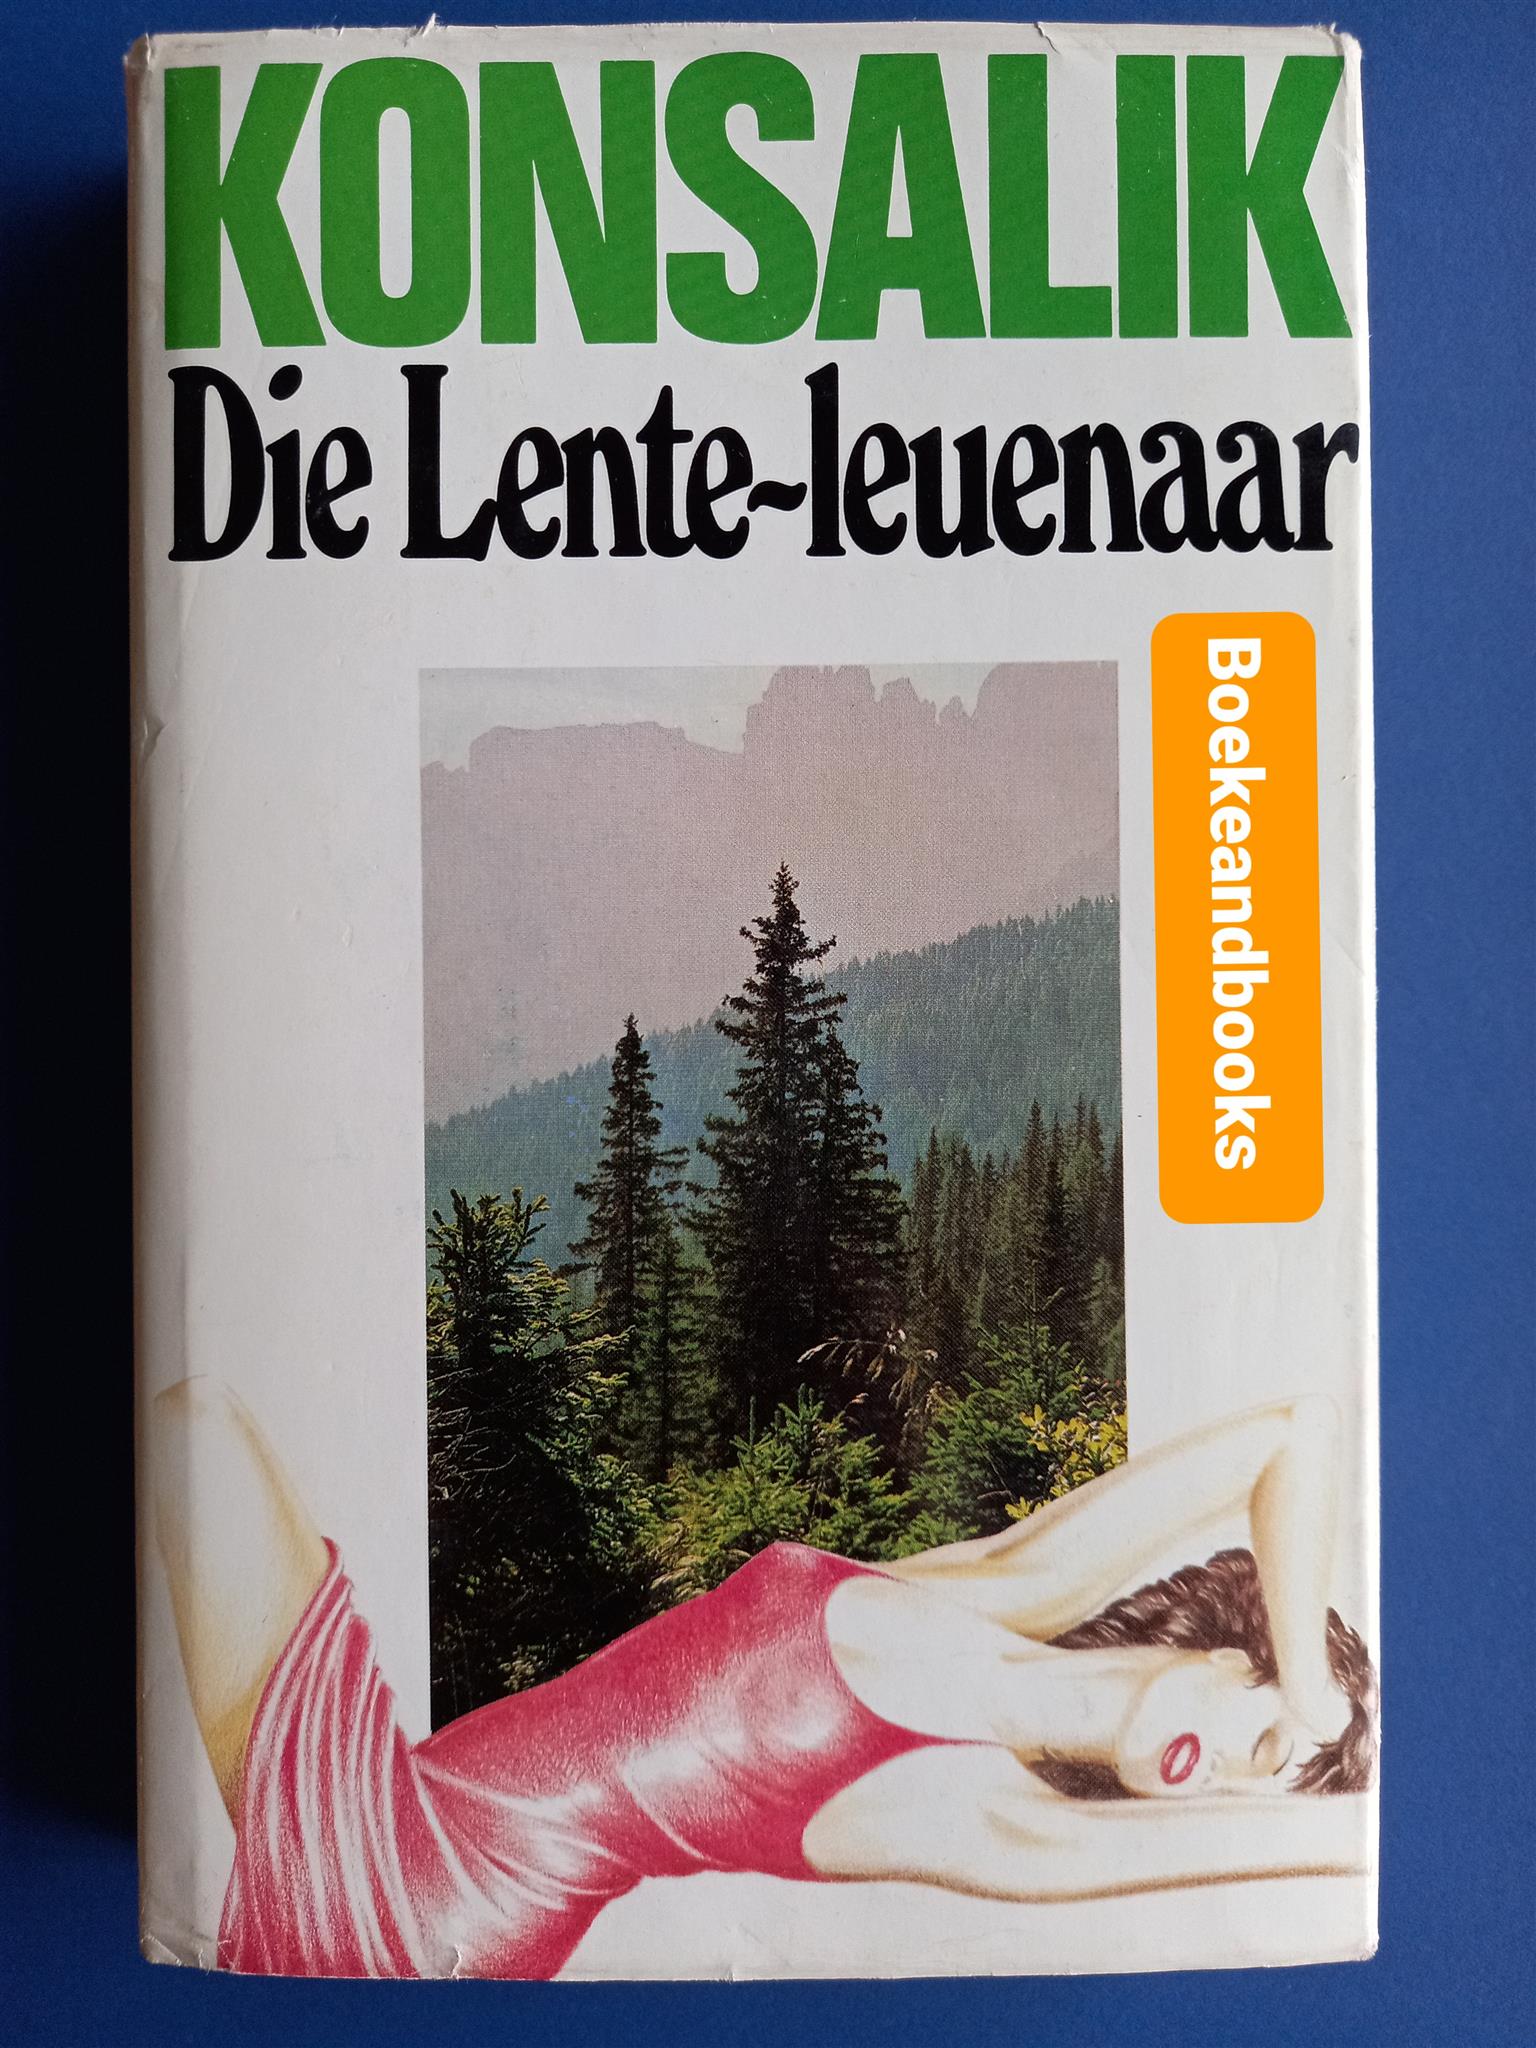 Die Lente-Leuenaar - Heinz G Konsalik.